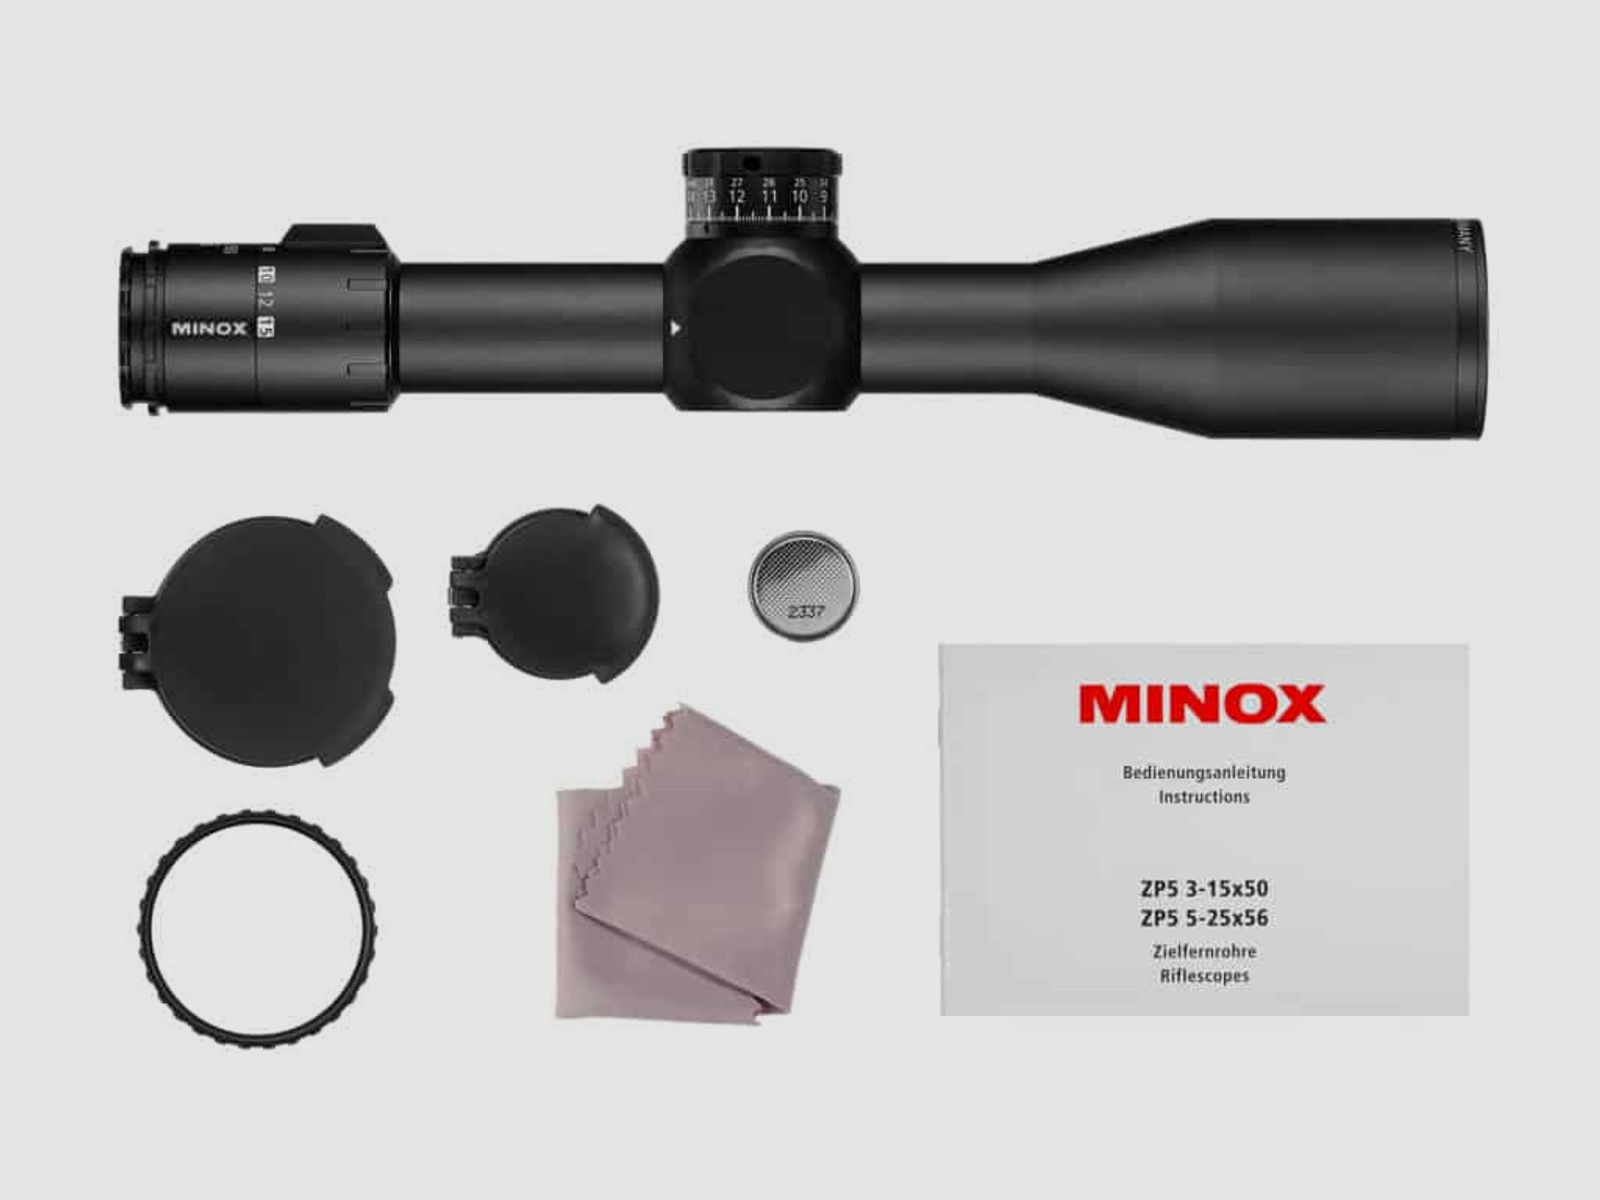 Minox Zielfernrohr ZP5 5-25x56 Absehen MR4